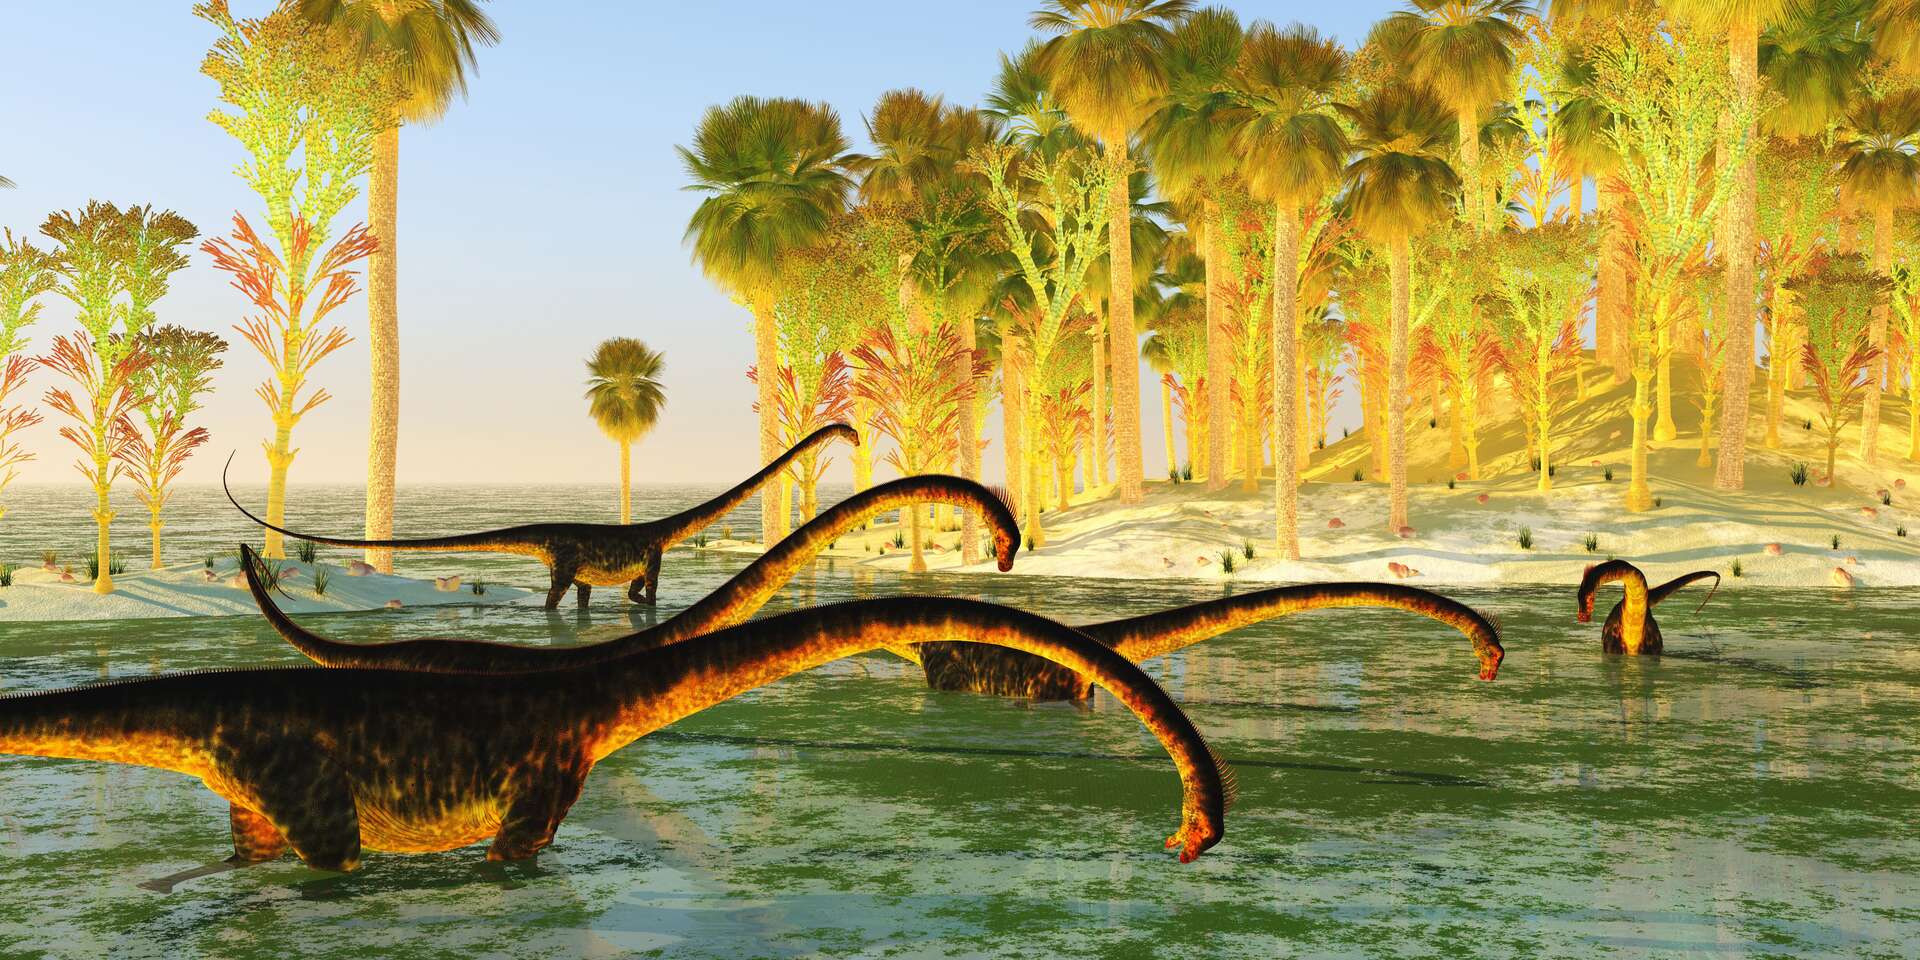 Les restes d'un gigantesque dinosaure découverts en Espagne !